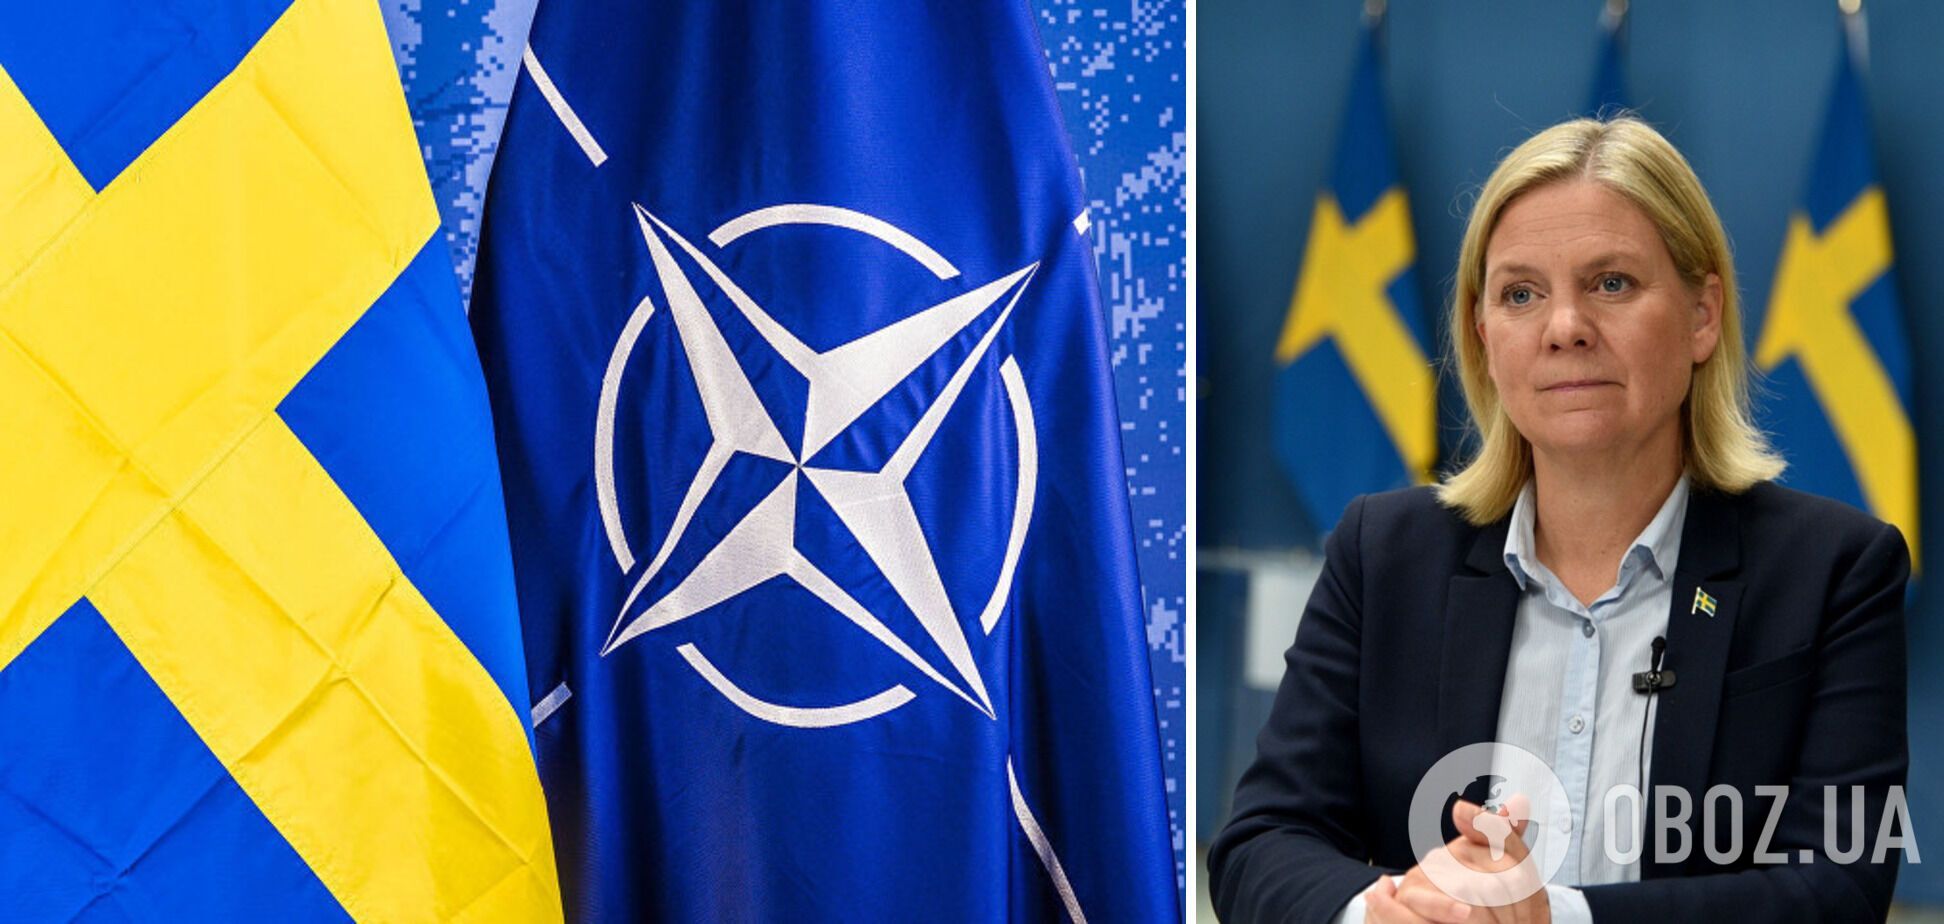 Швеция готовится к вступлению в НАТО